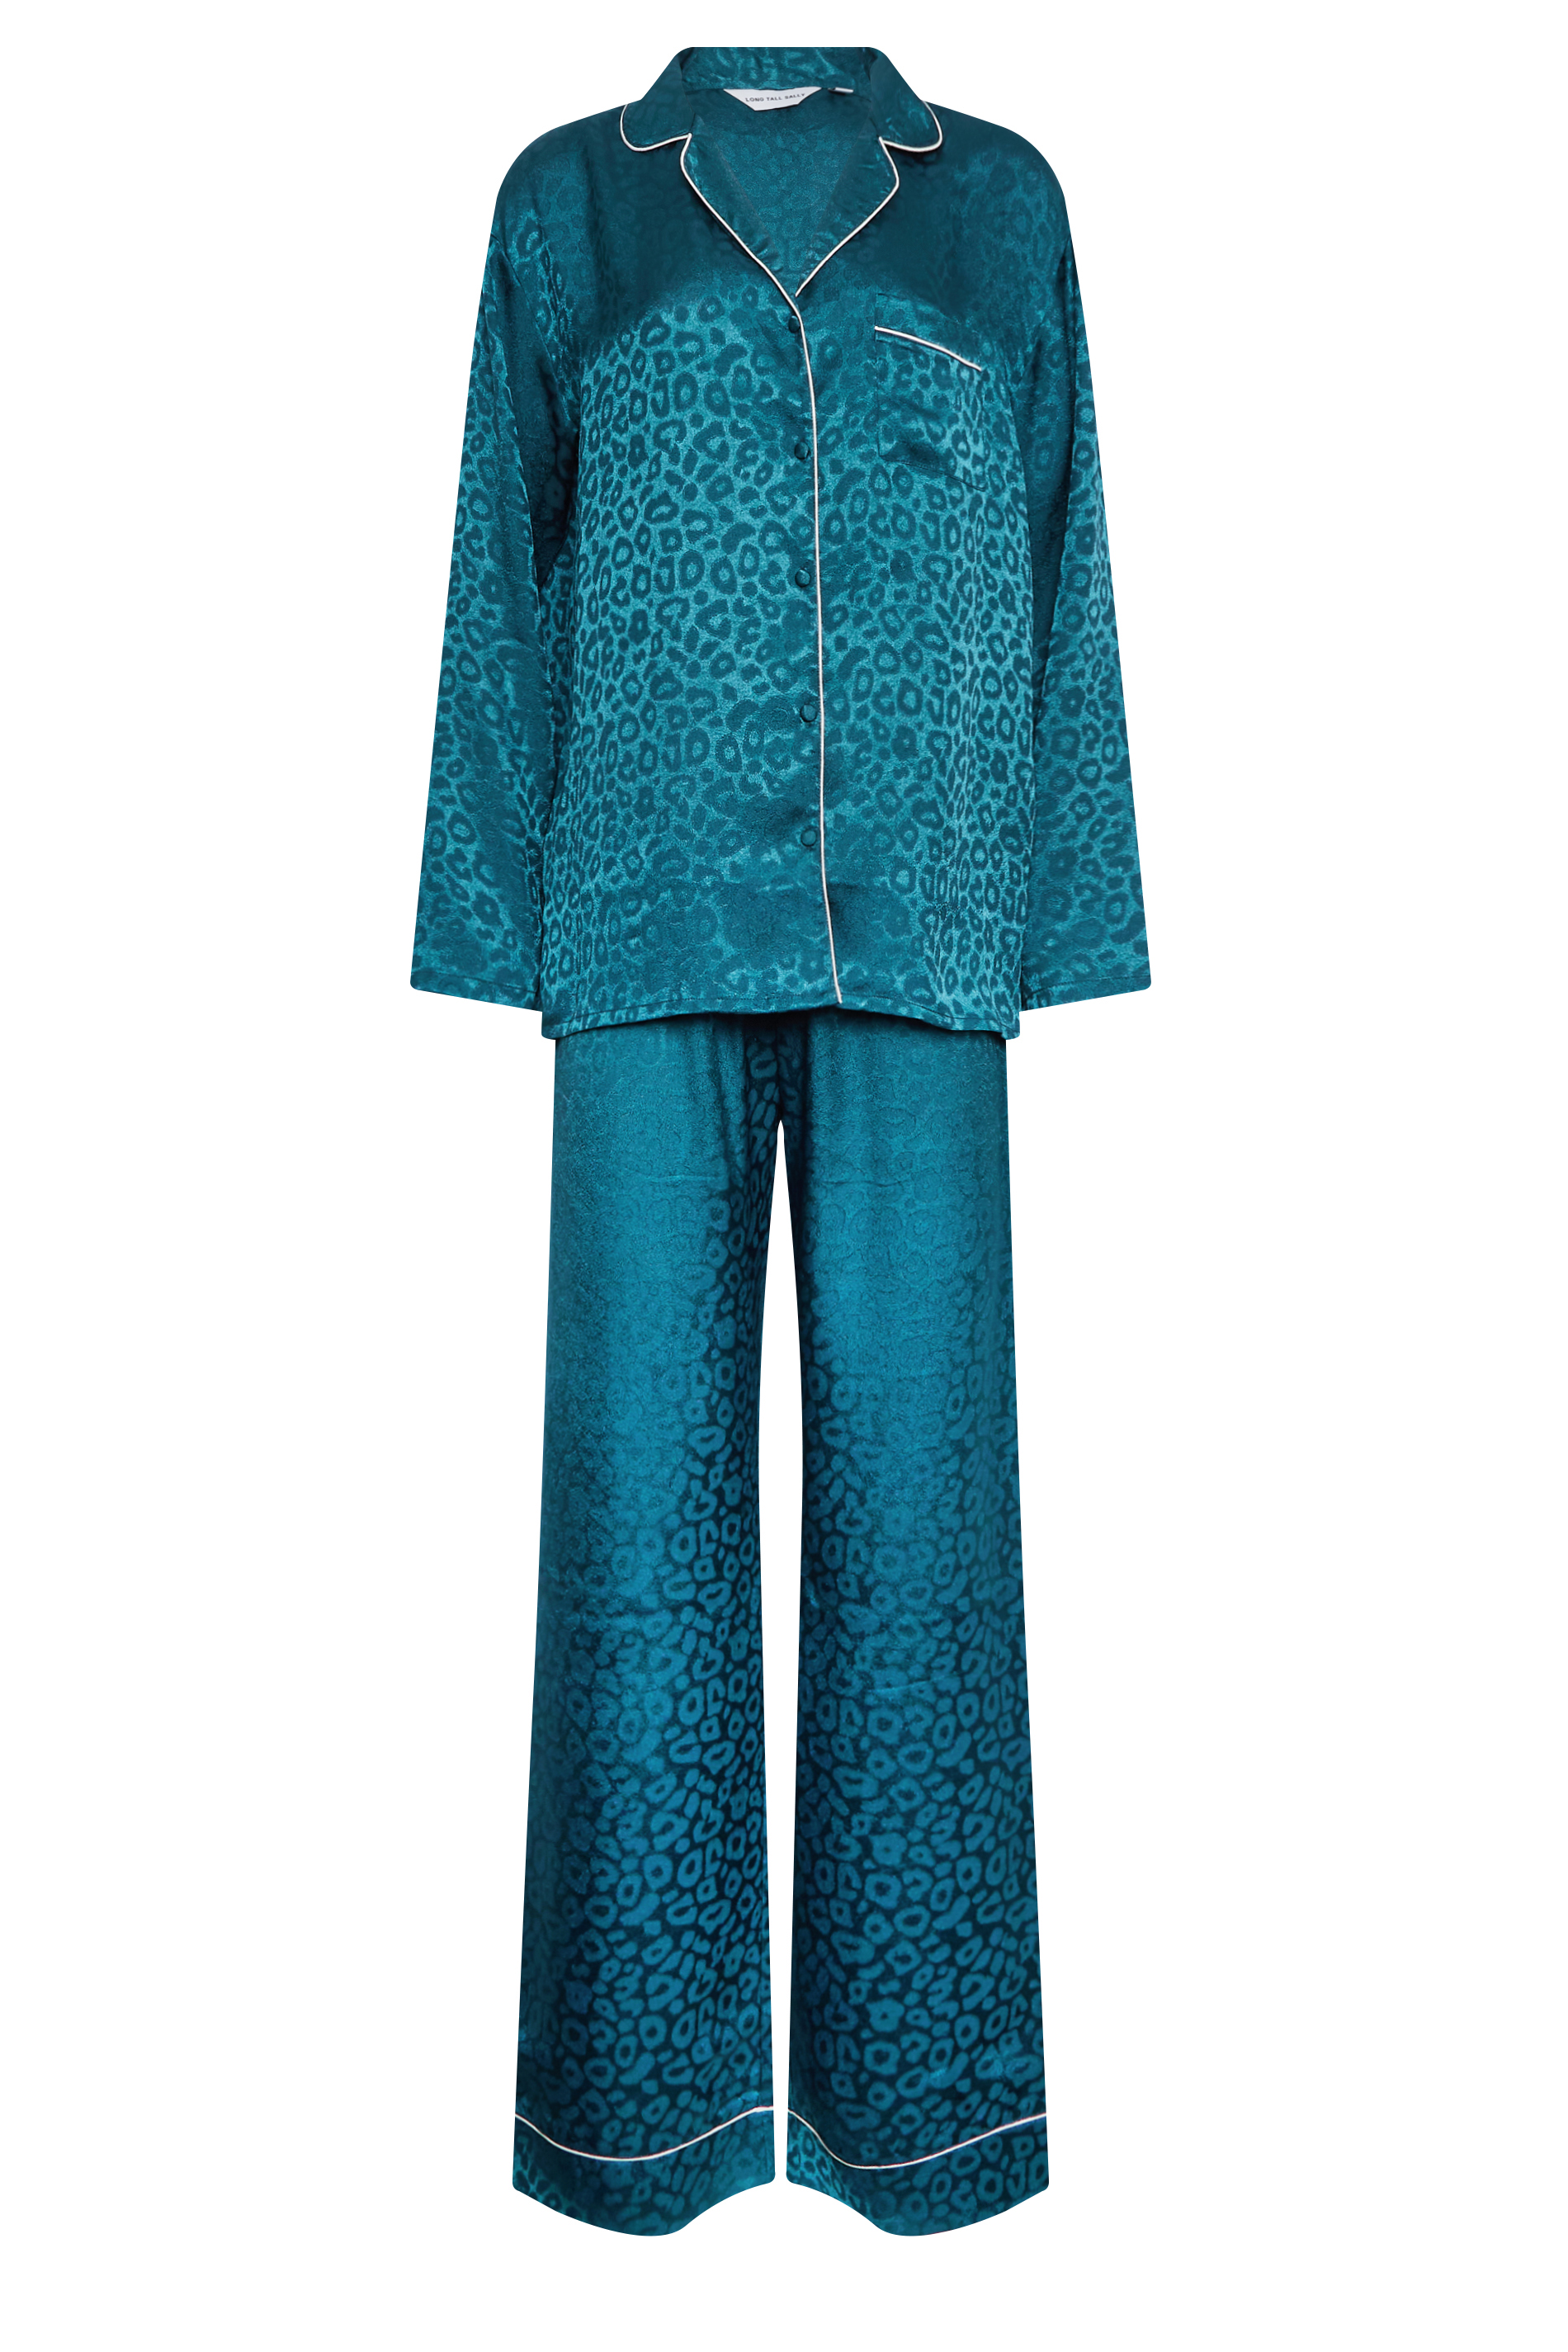 LTS Tall Women's Teal Blue Leopard Print Satin Pyjama Set | Long Tall Sally